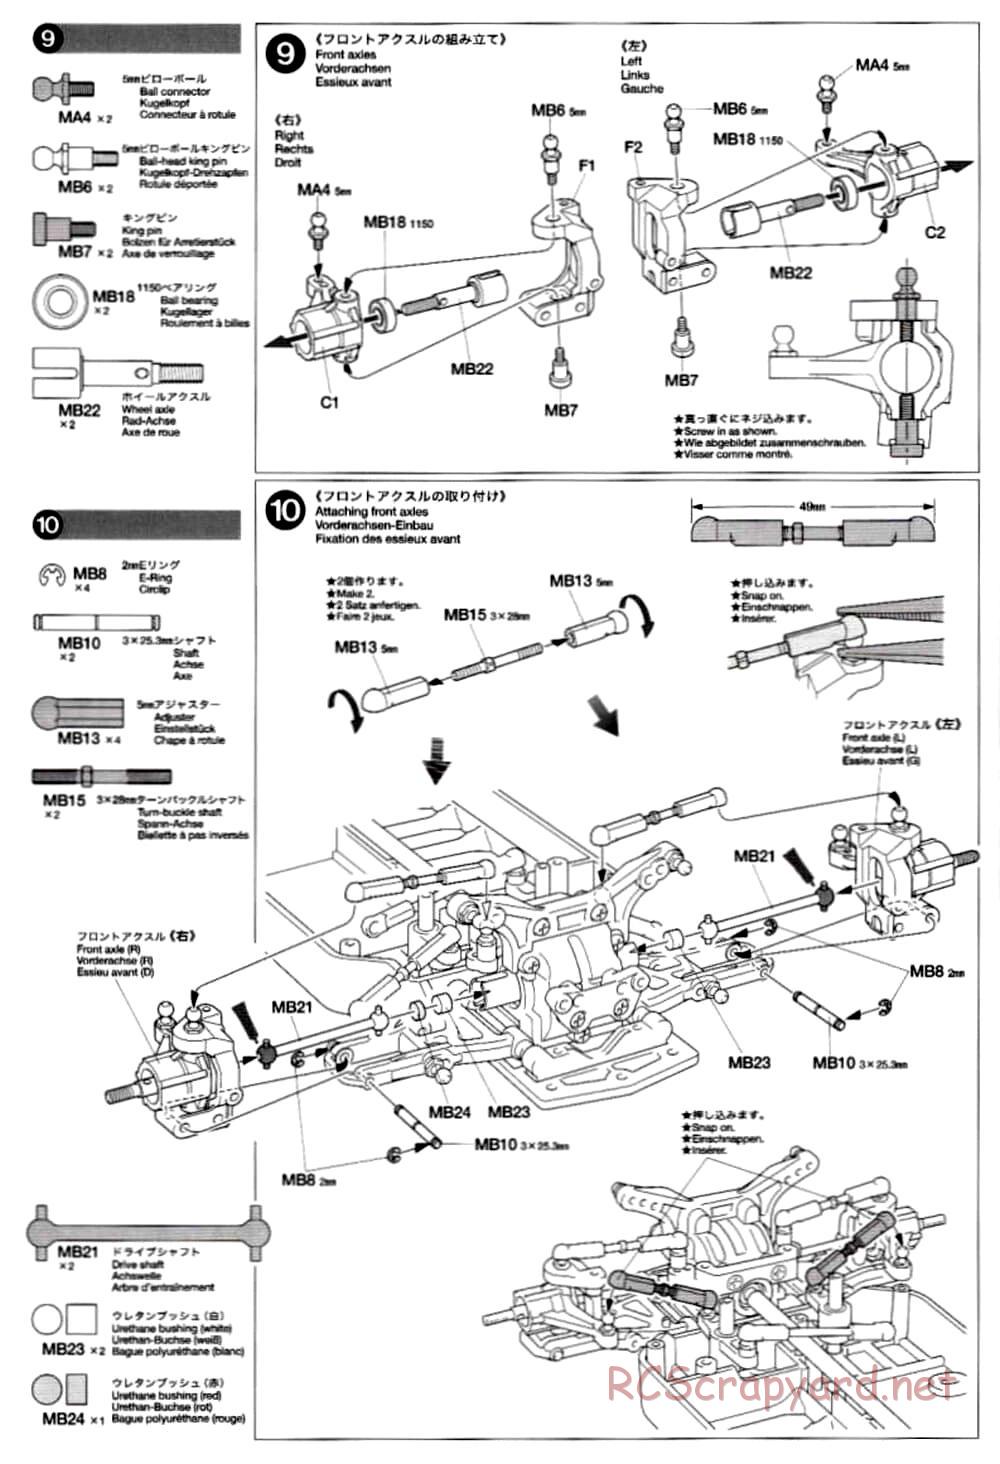 Tamiya - TB-02 Chassis - Manual - Page 8